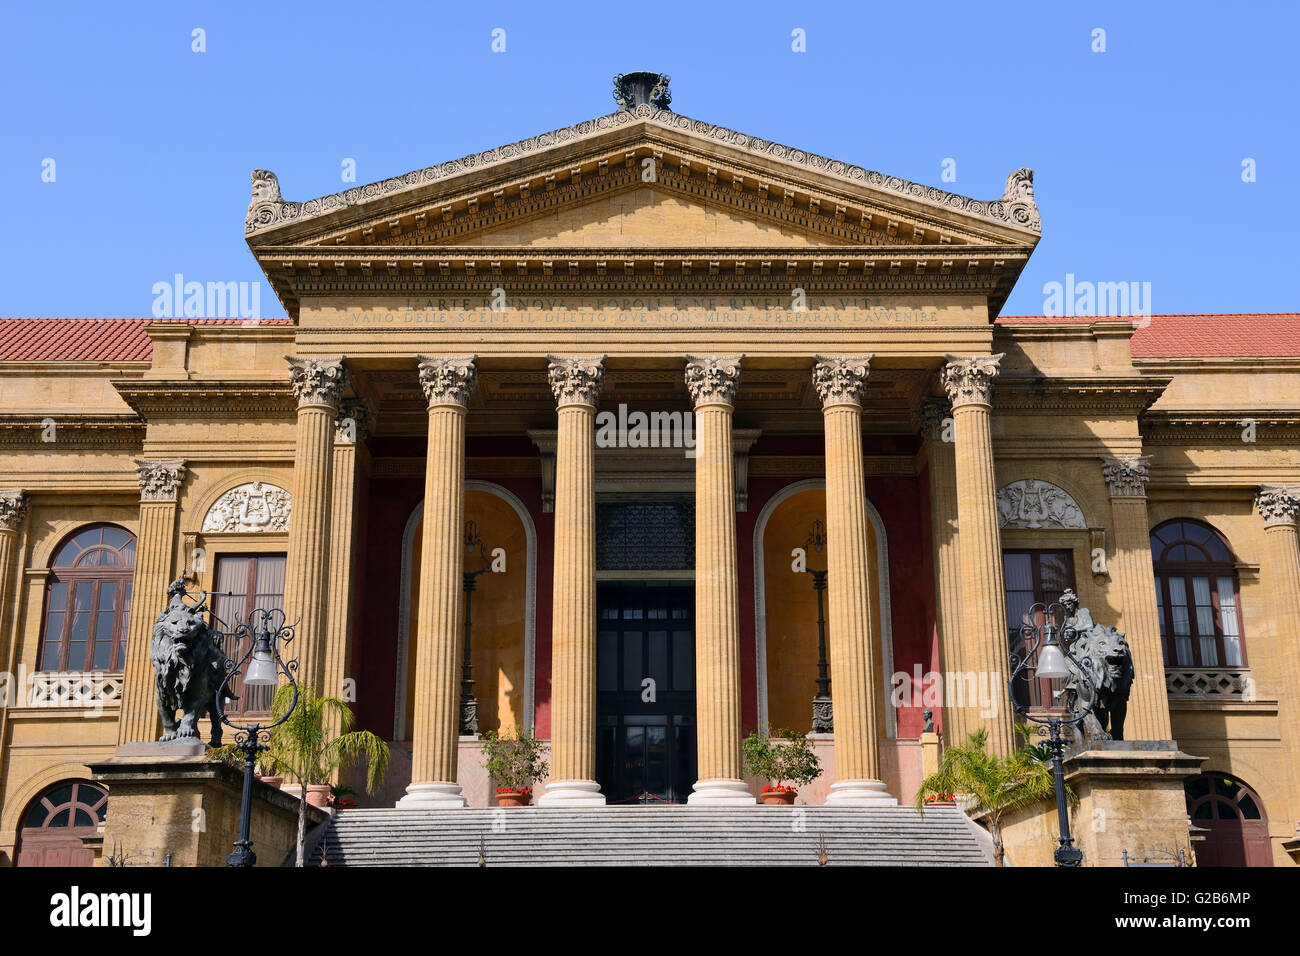 L'Opéra de Palerme, Teatro Massimo à Piazza Giuseppe Verdi, Palerme, Sicile, Italie Banque D'Images